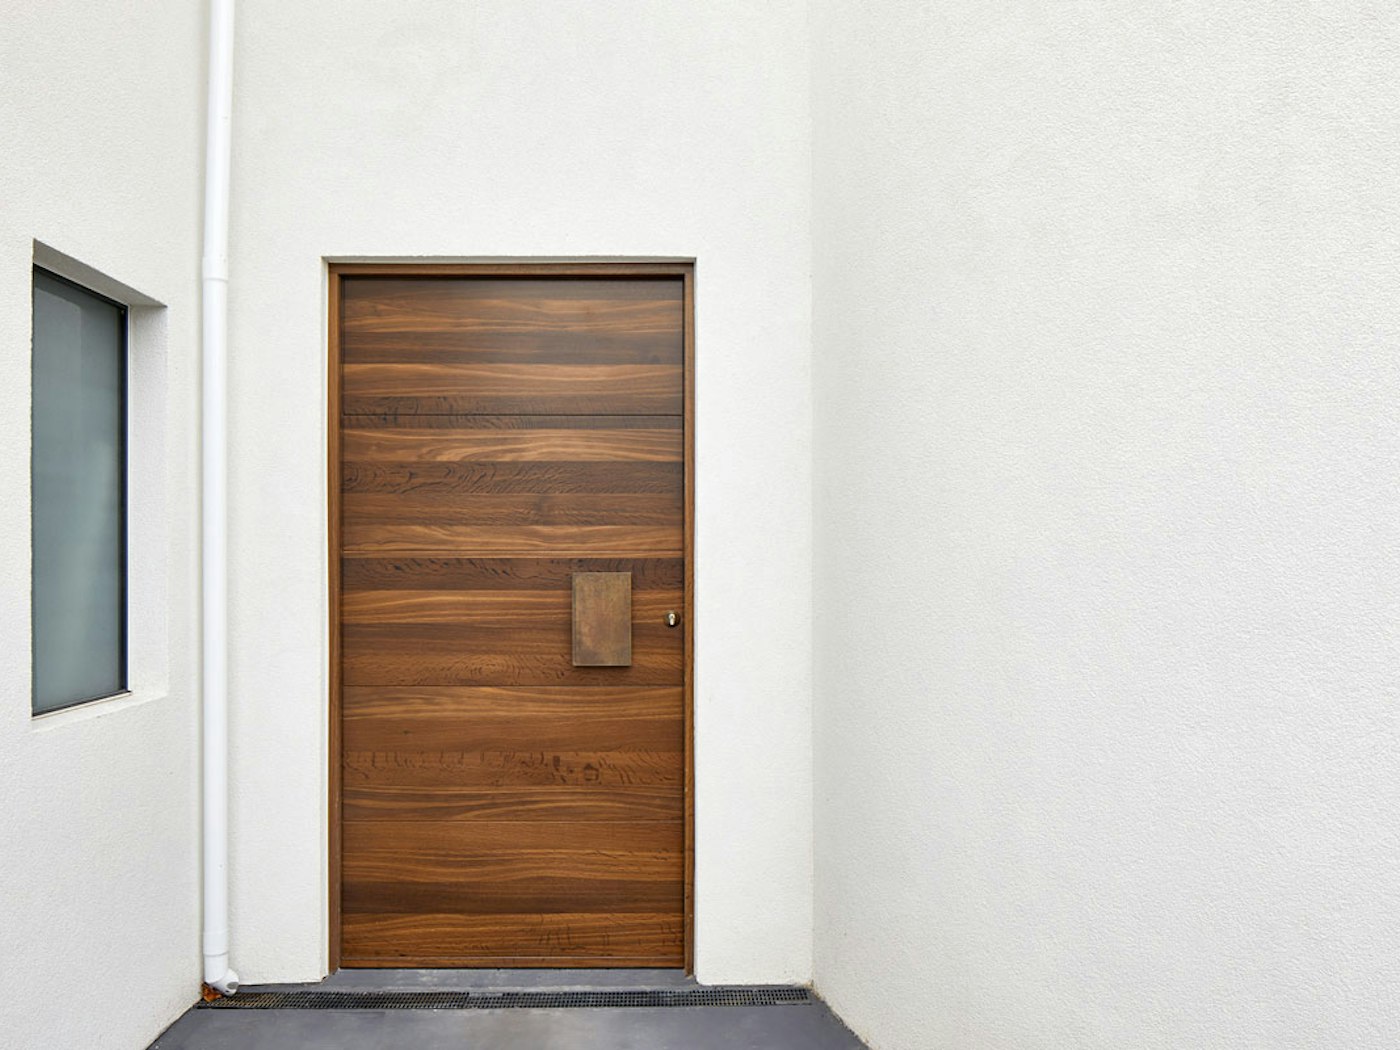 Fumed wood | Bronze handle option: BZ1 | Parma front door